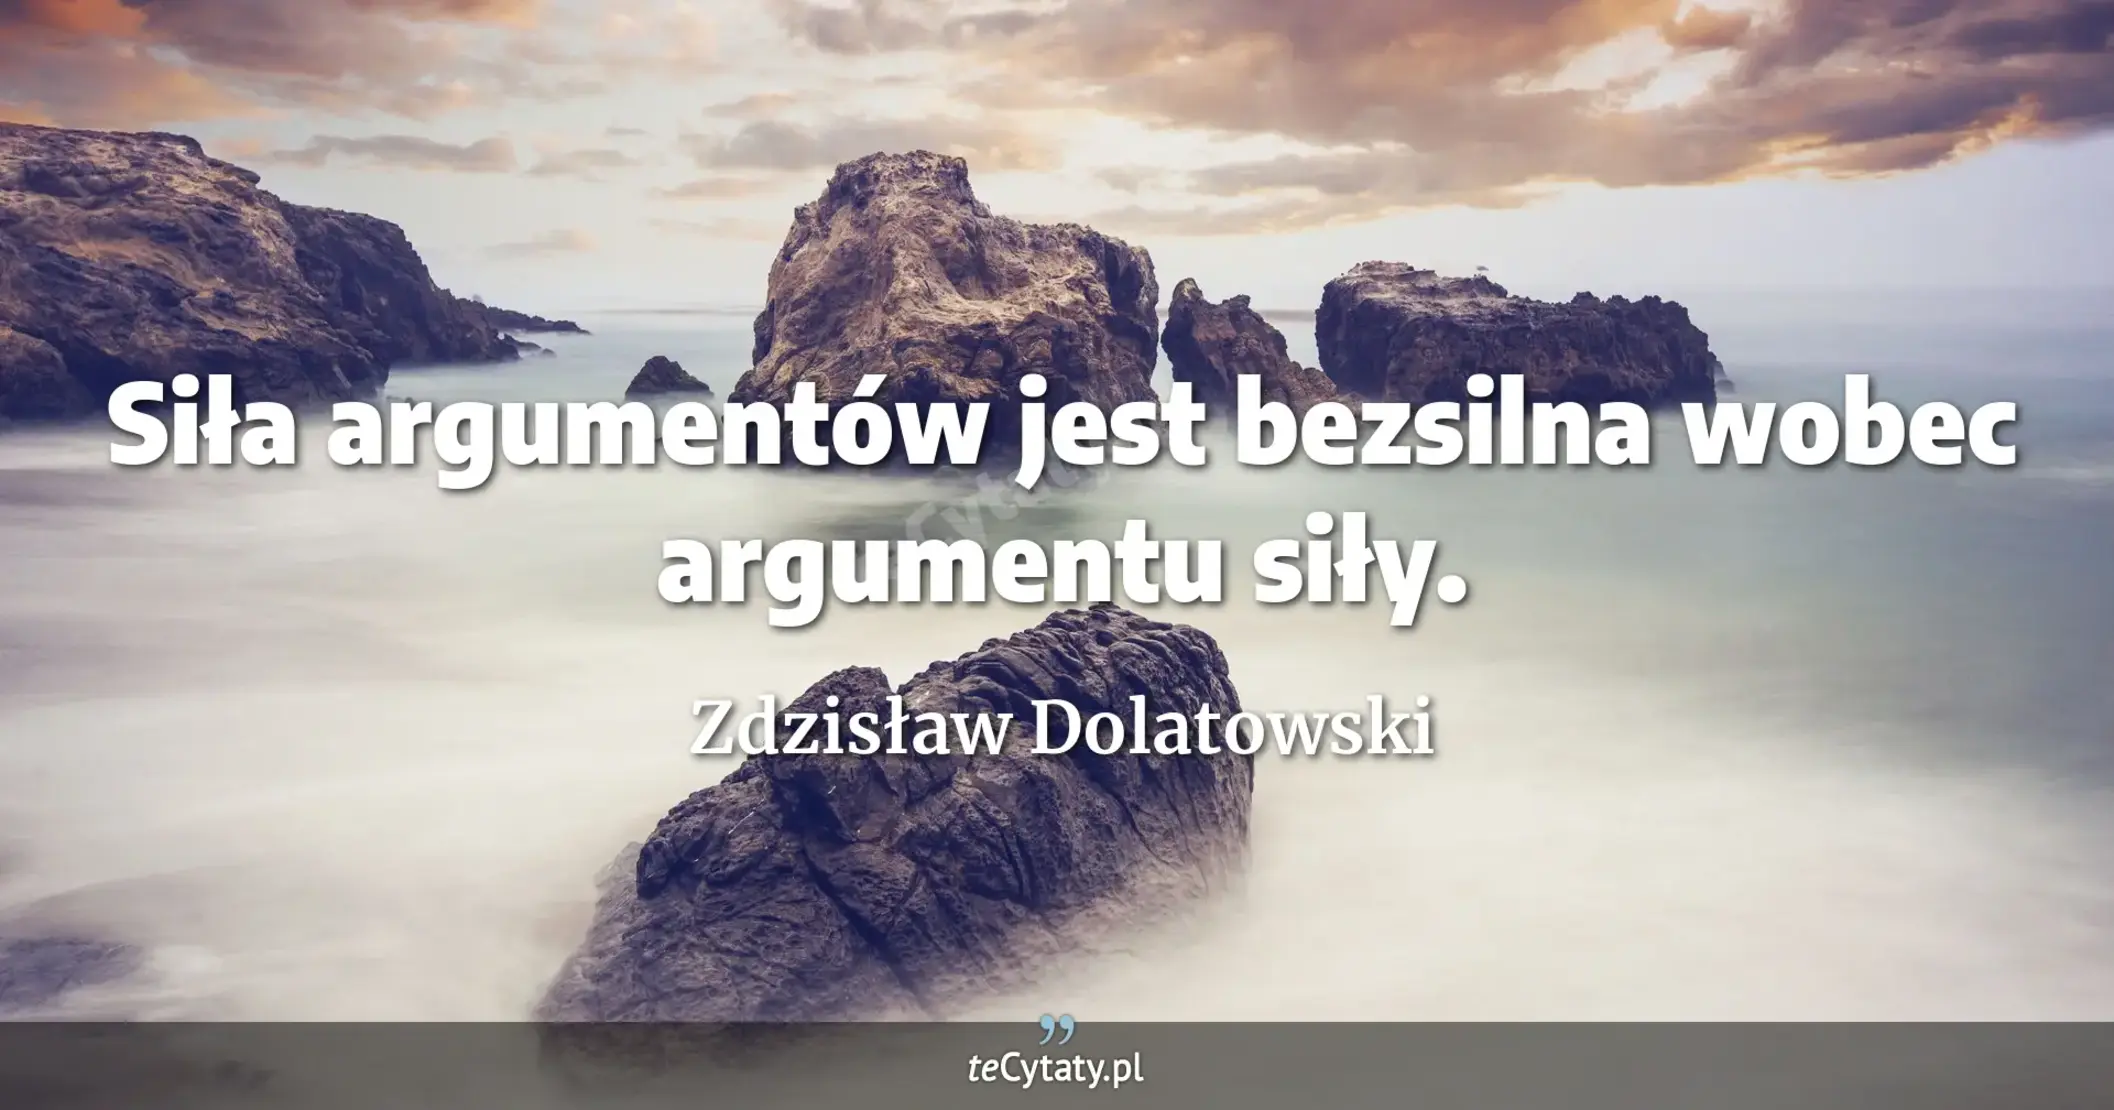 Siła argumentów jest bezsilna wobec argumentu siły. - Zdzisław Dolatowski